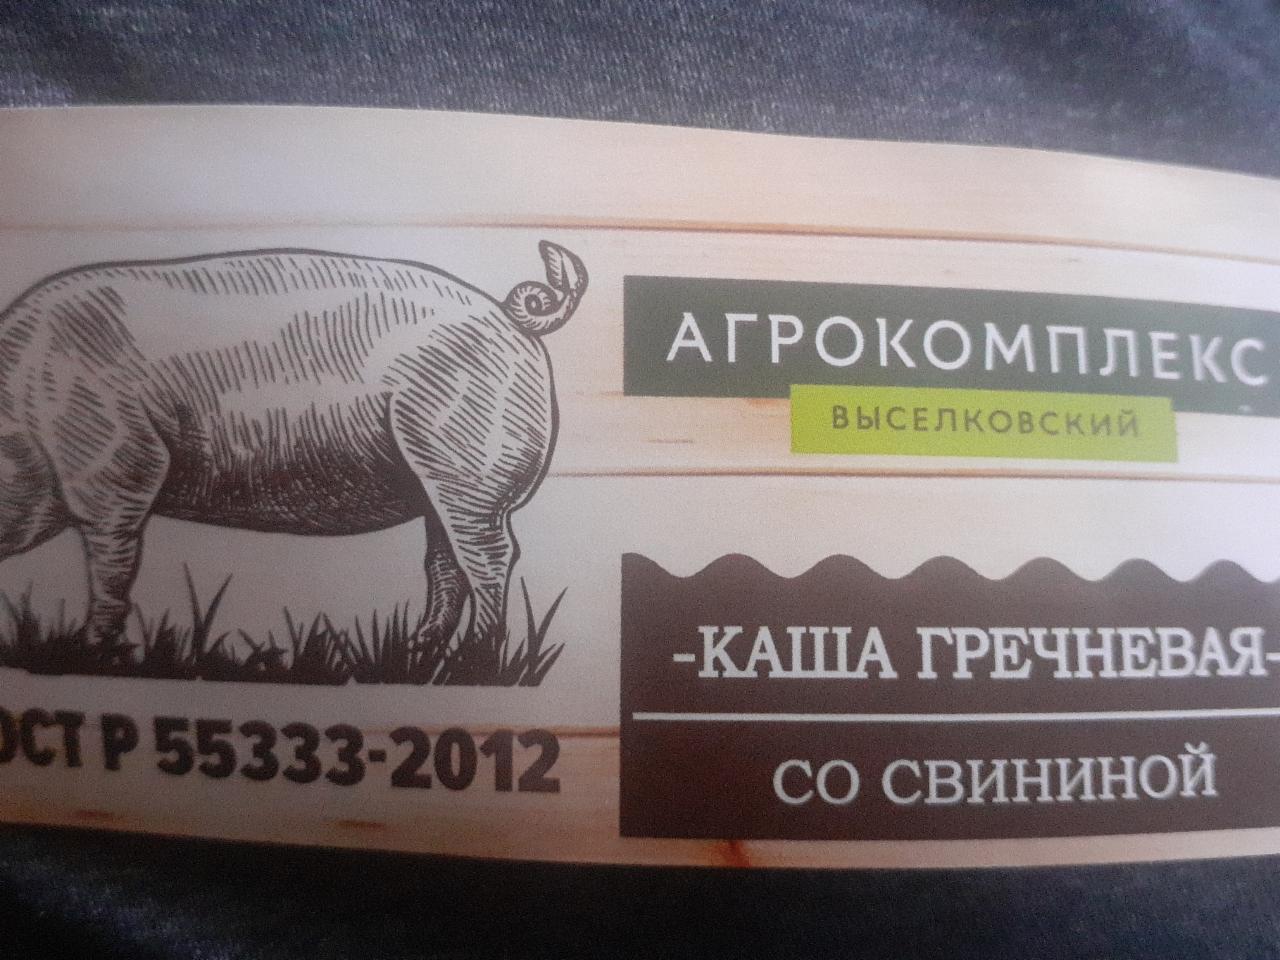 Фото - Каша гречневая со свининой Агрокомплекс выселковский